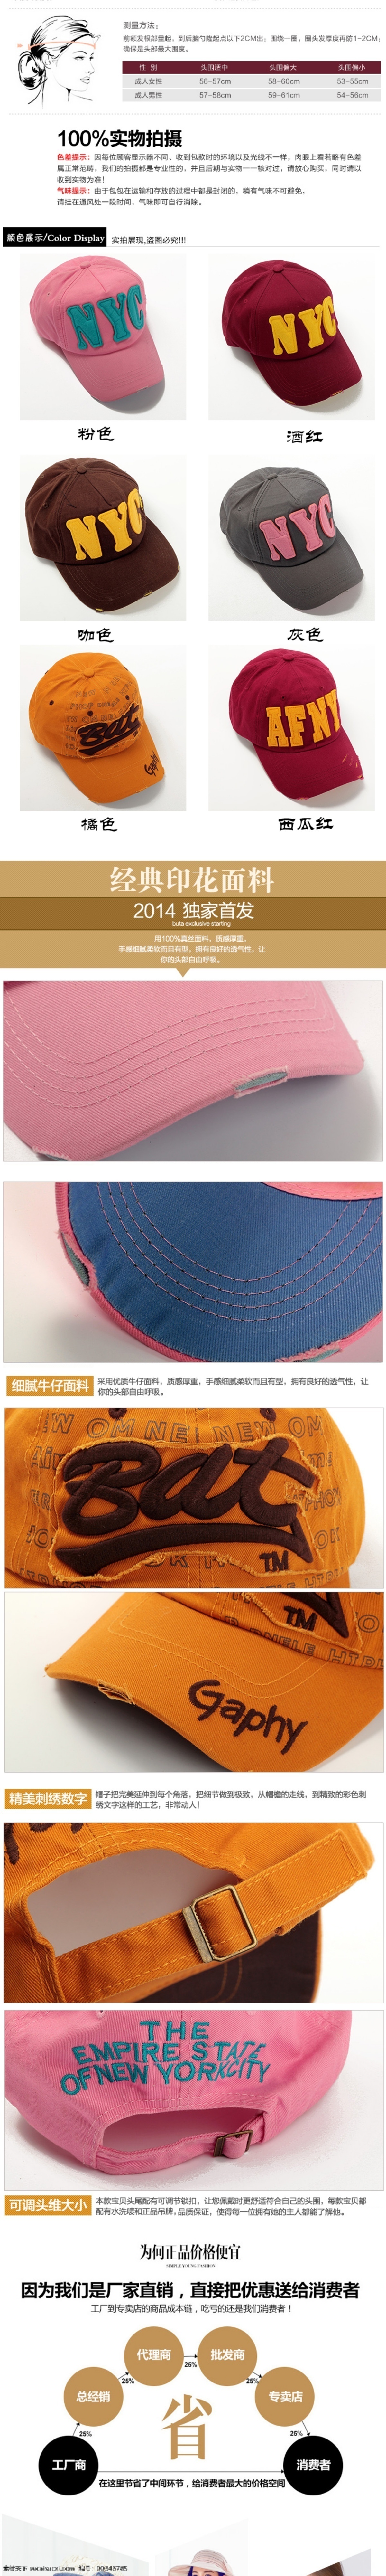 产品 分类 产品分类 产品细节 厂家直销 淘宝 细节展示 颜色分类 棒球帽详情页 产品描述页 女帽运动帽